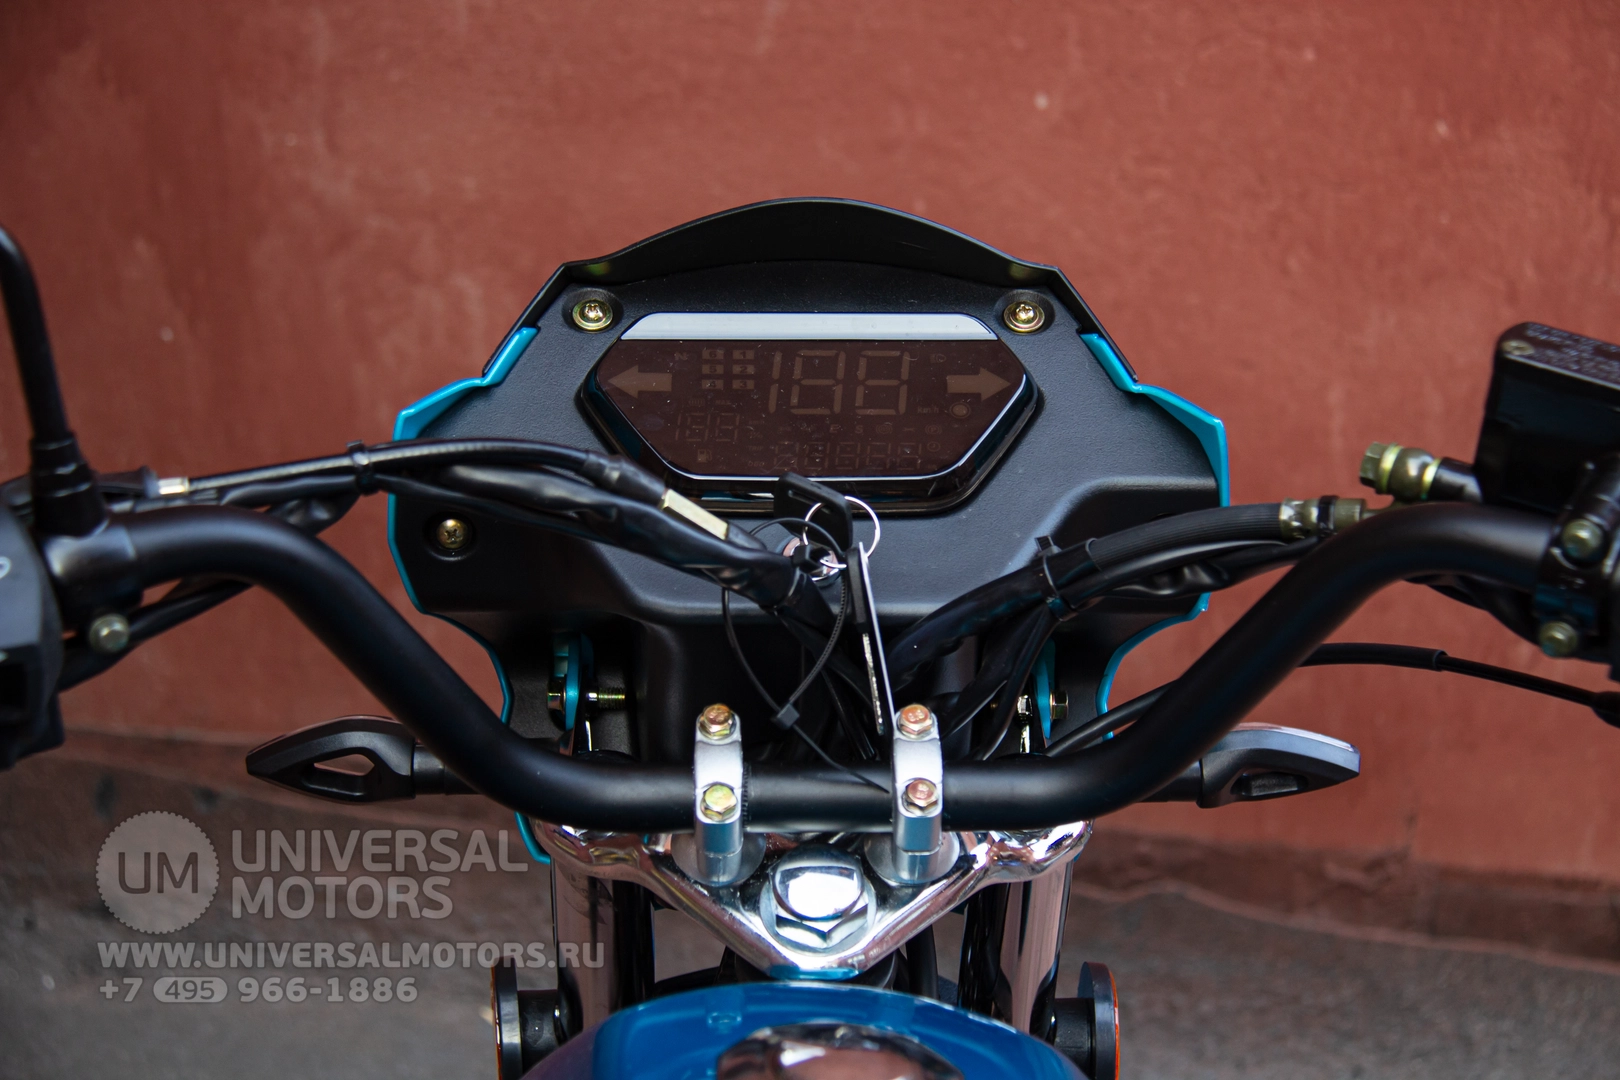 Мотоцикл Universal Alpha CX 125-2 (50), 390910007116213796